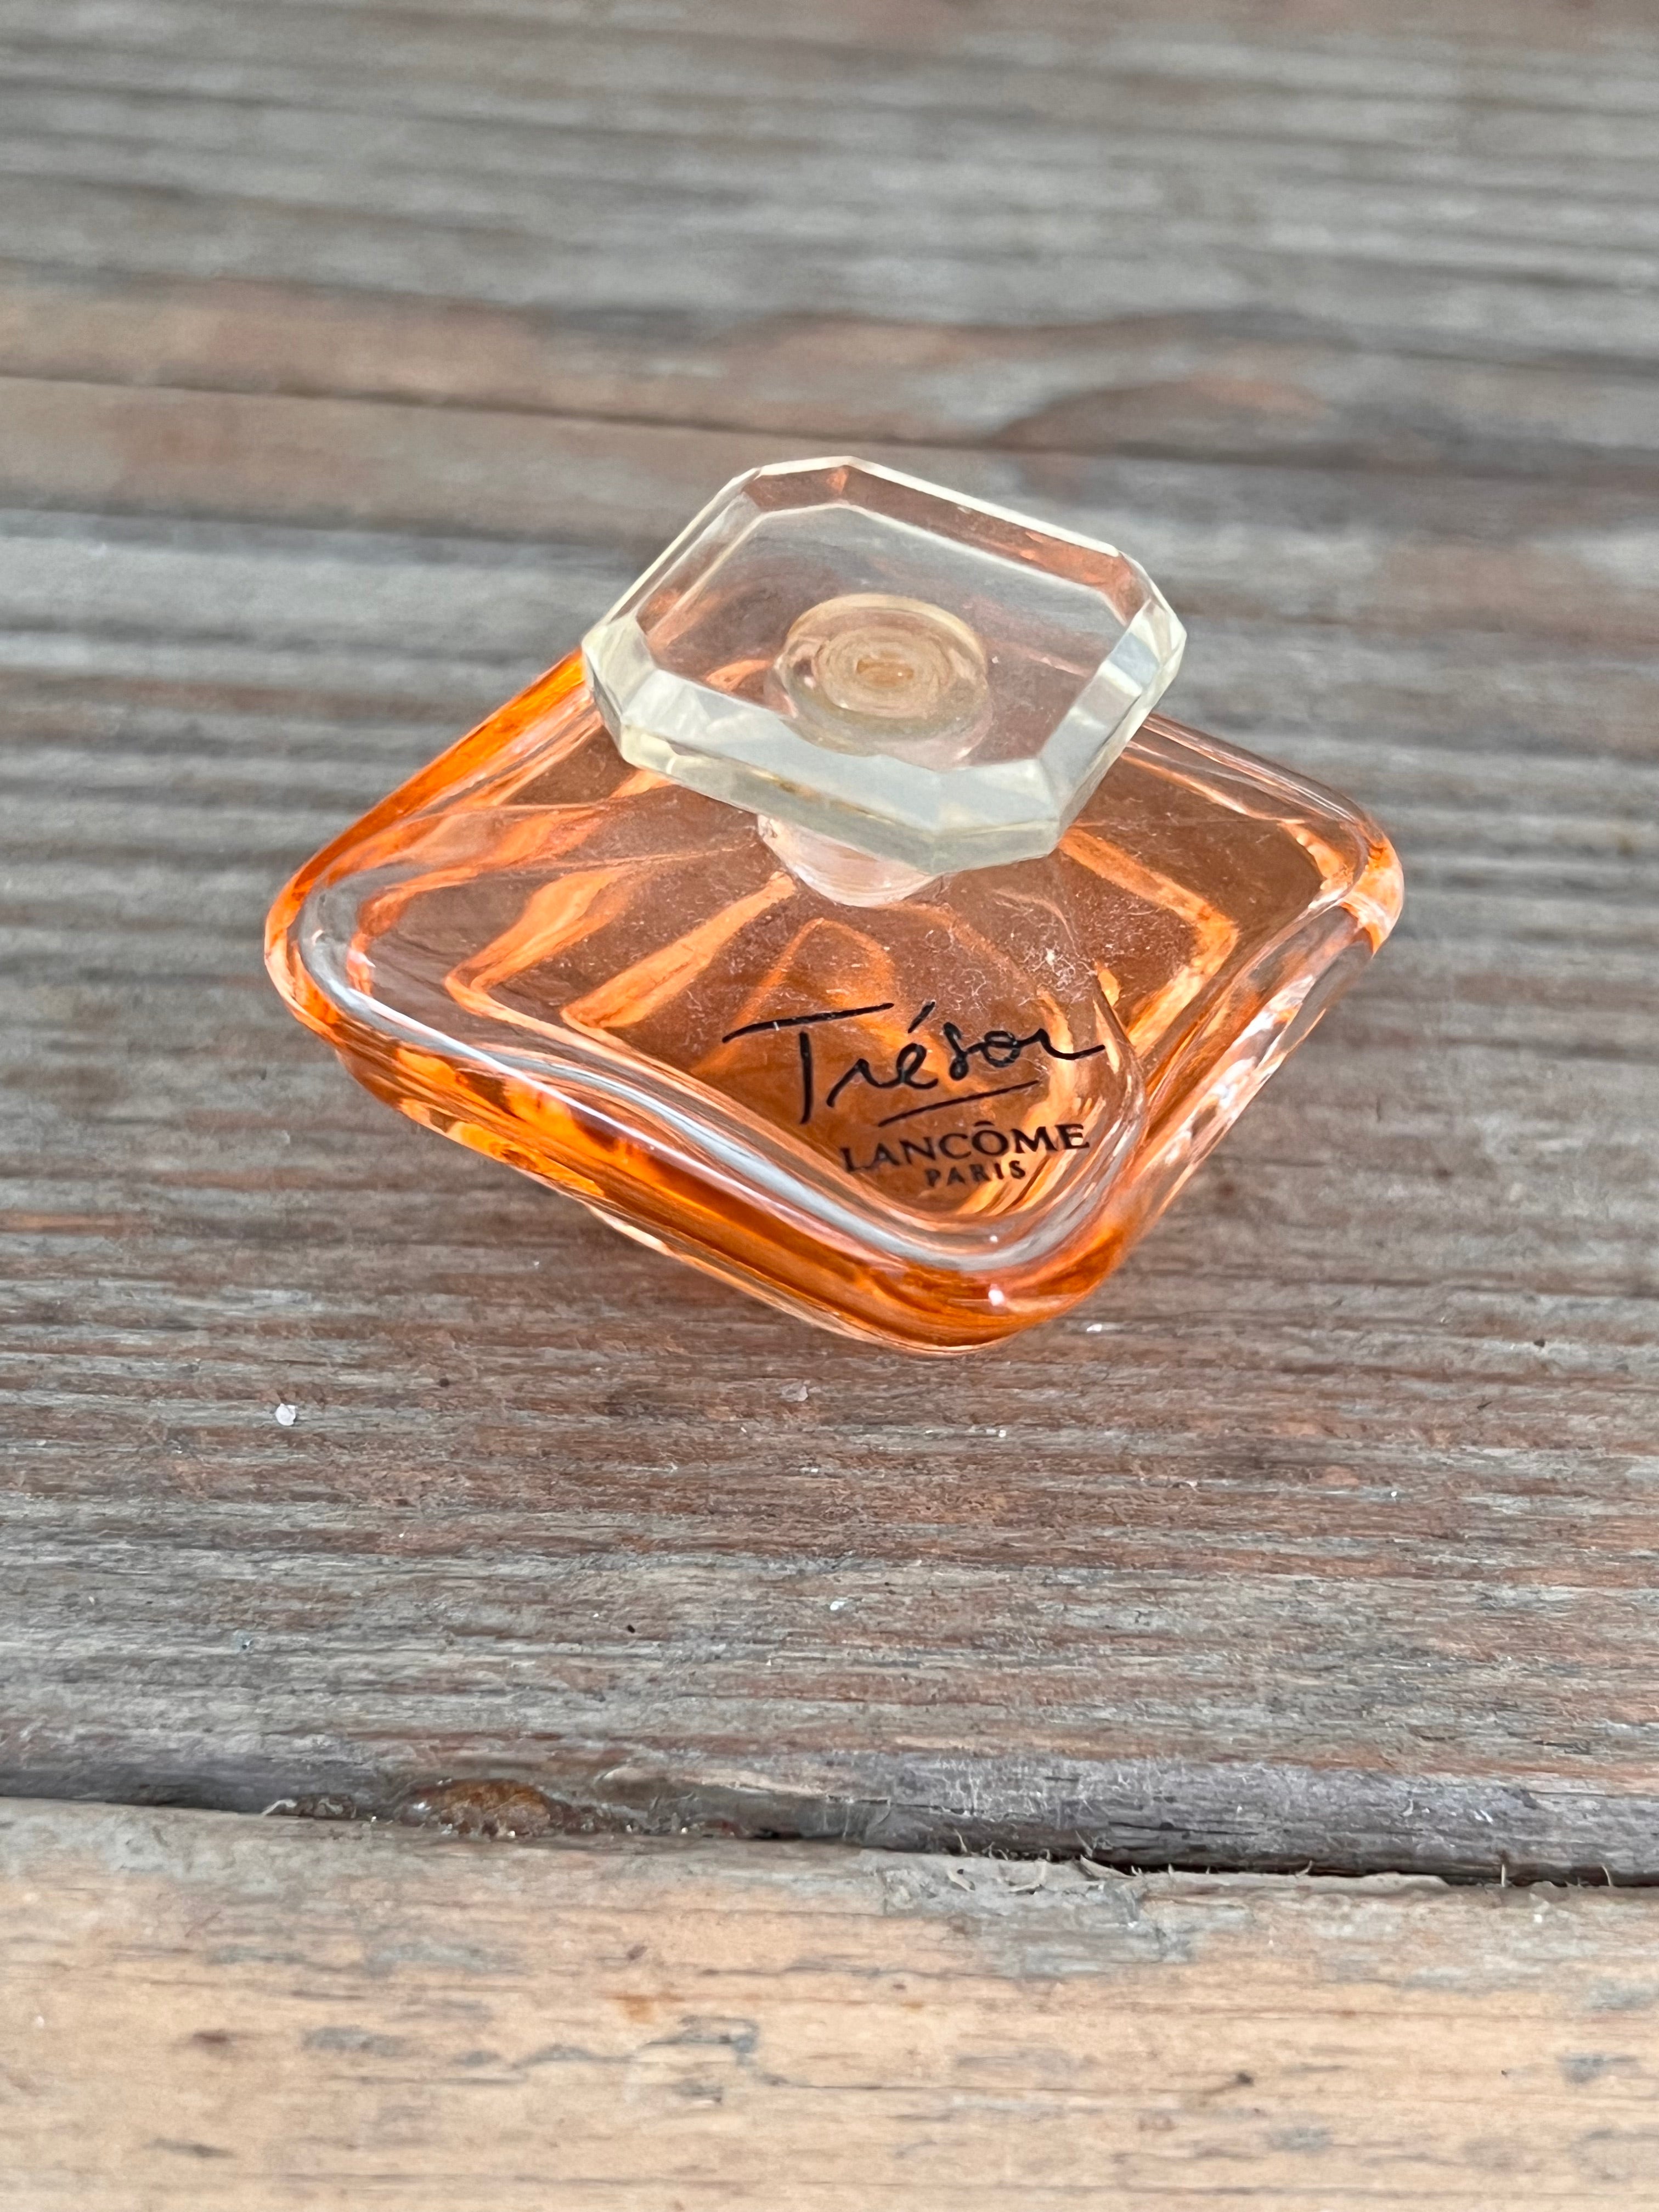 Miniatuur parfumflesje Trésor Lancôme